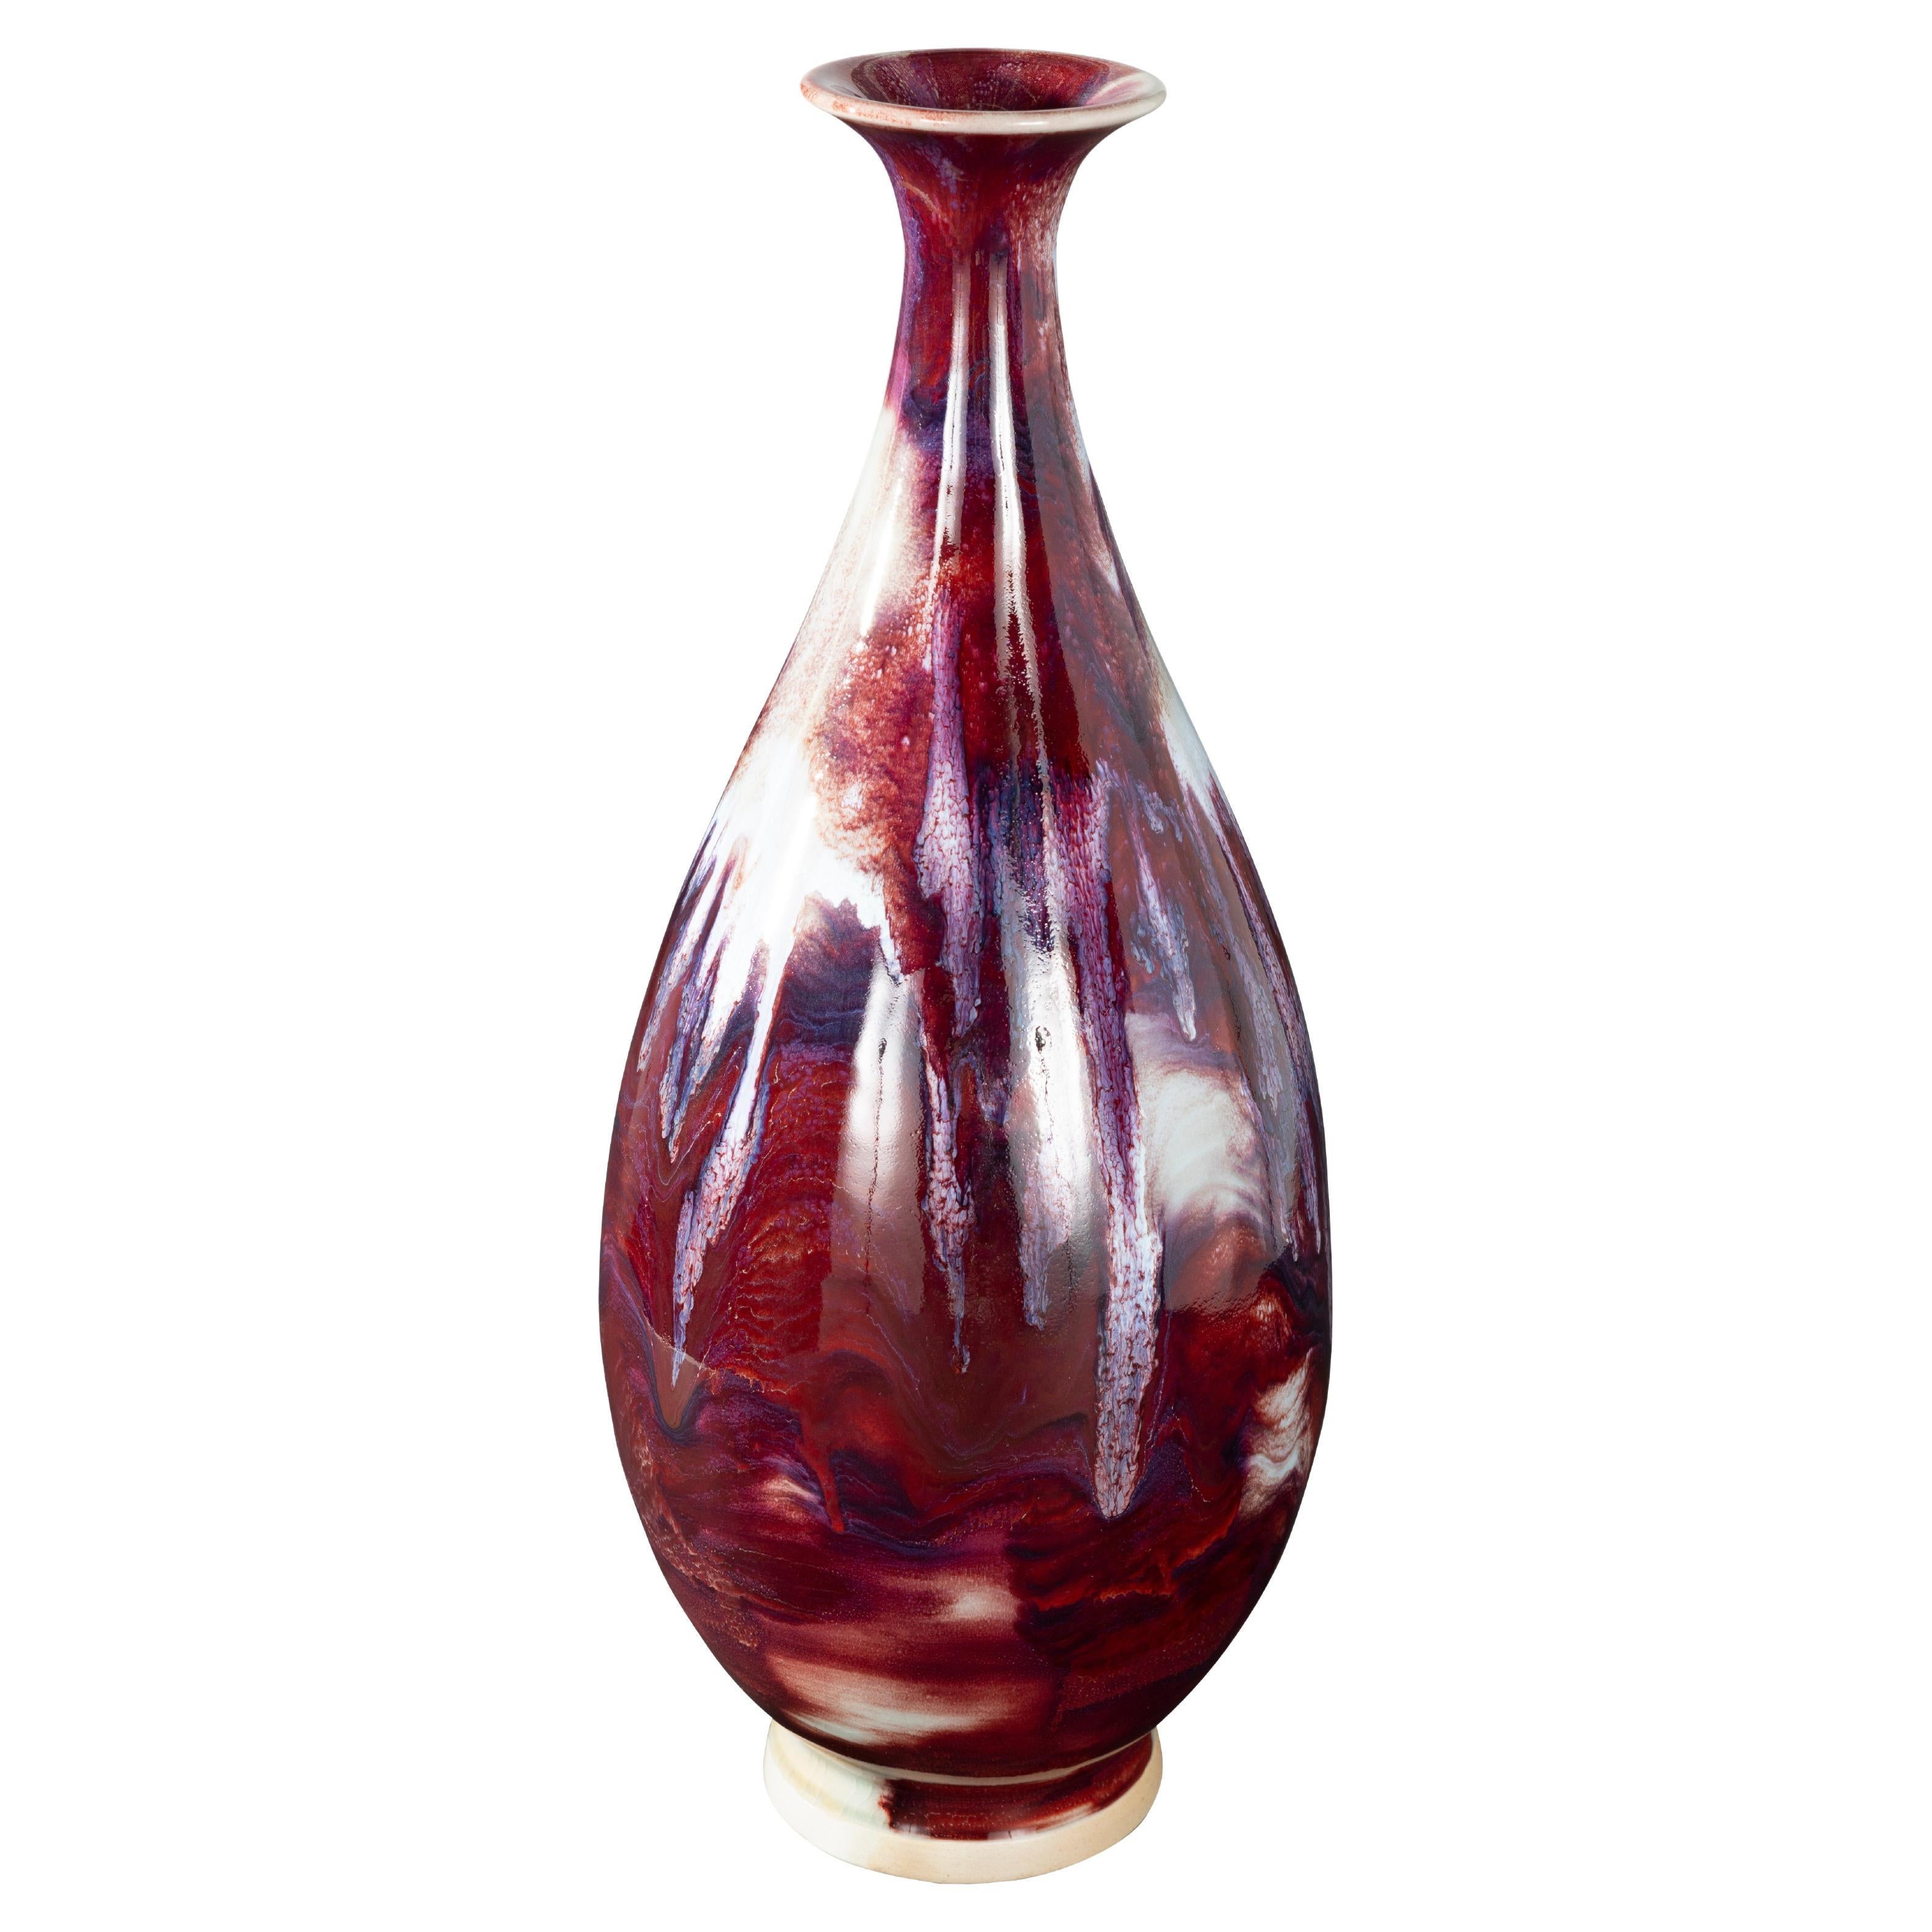 Vase cannelé bigarré en céramique à glaçure rose sang de bœuf et goutte d'eau